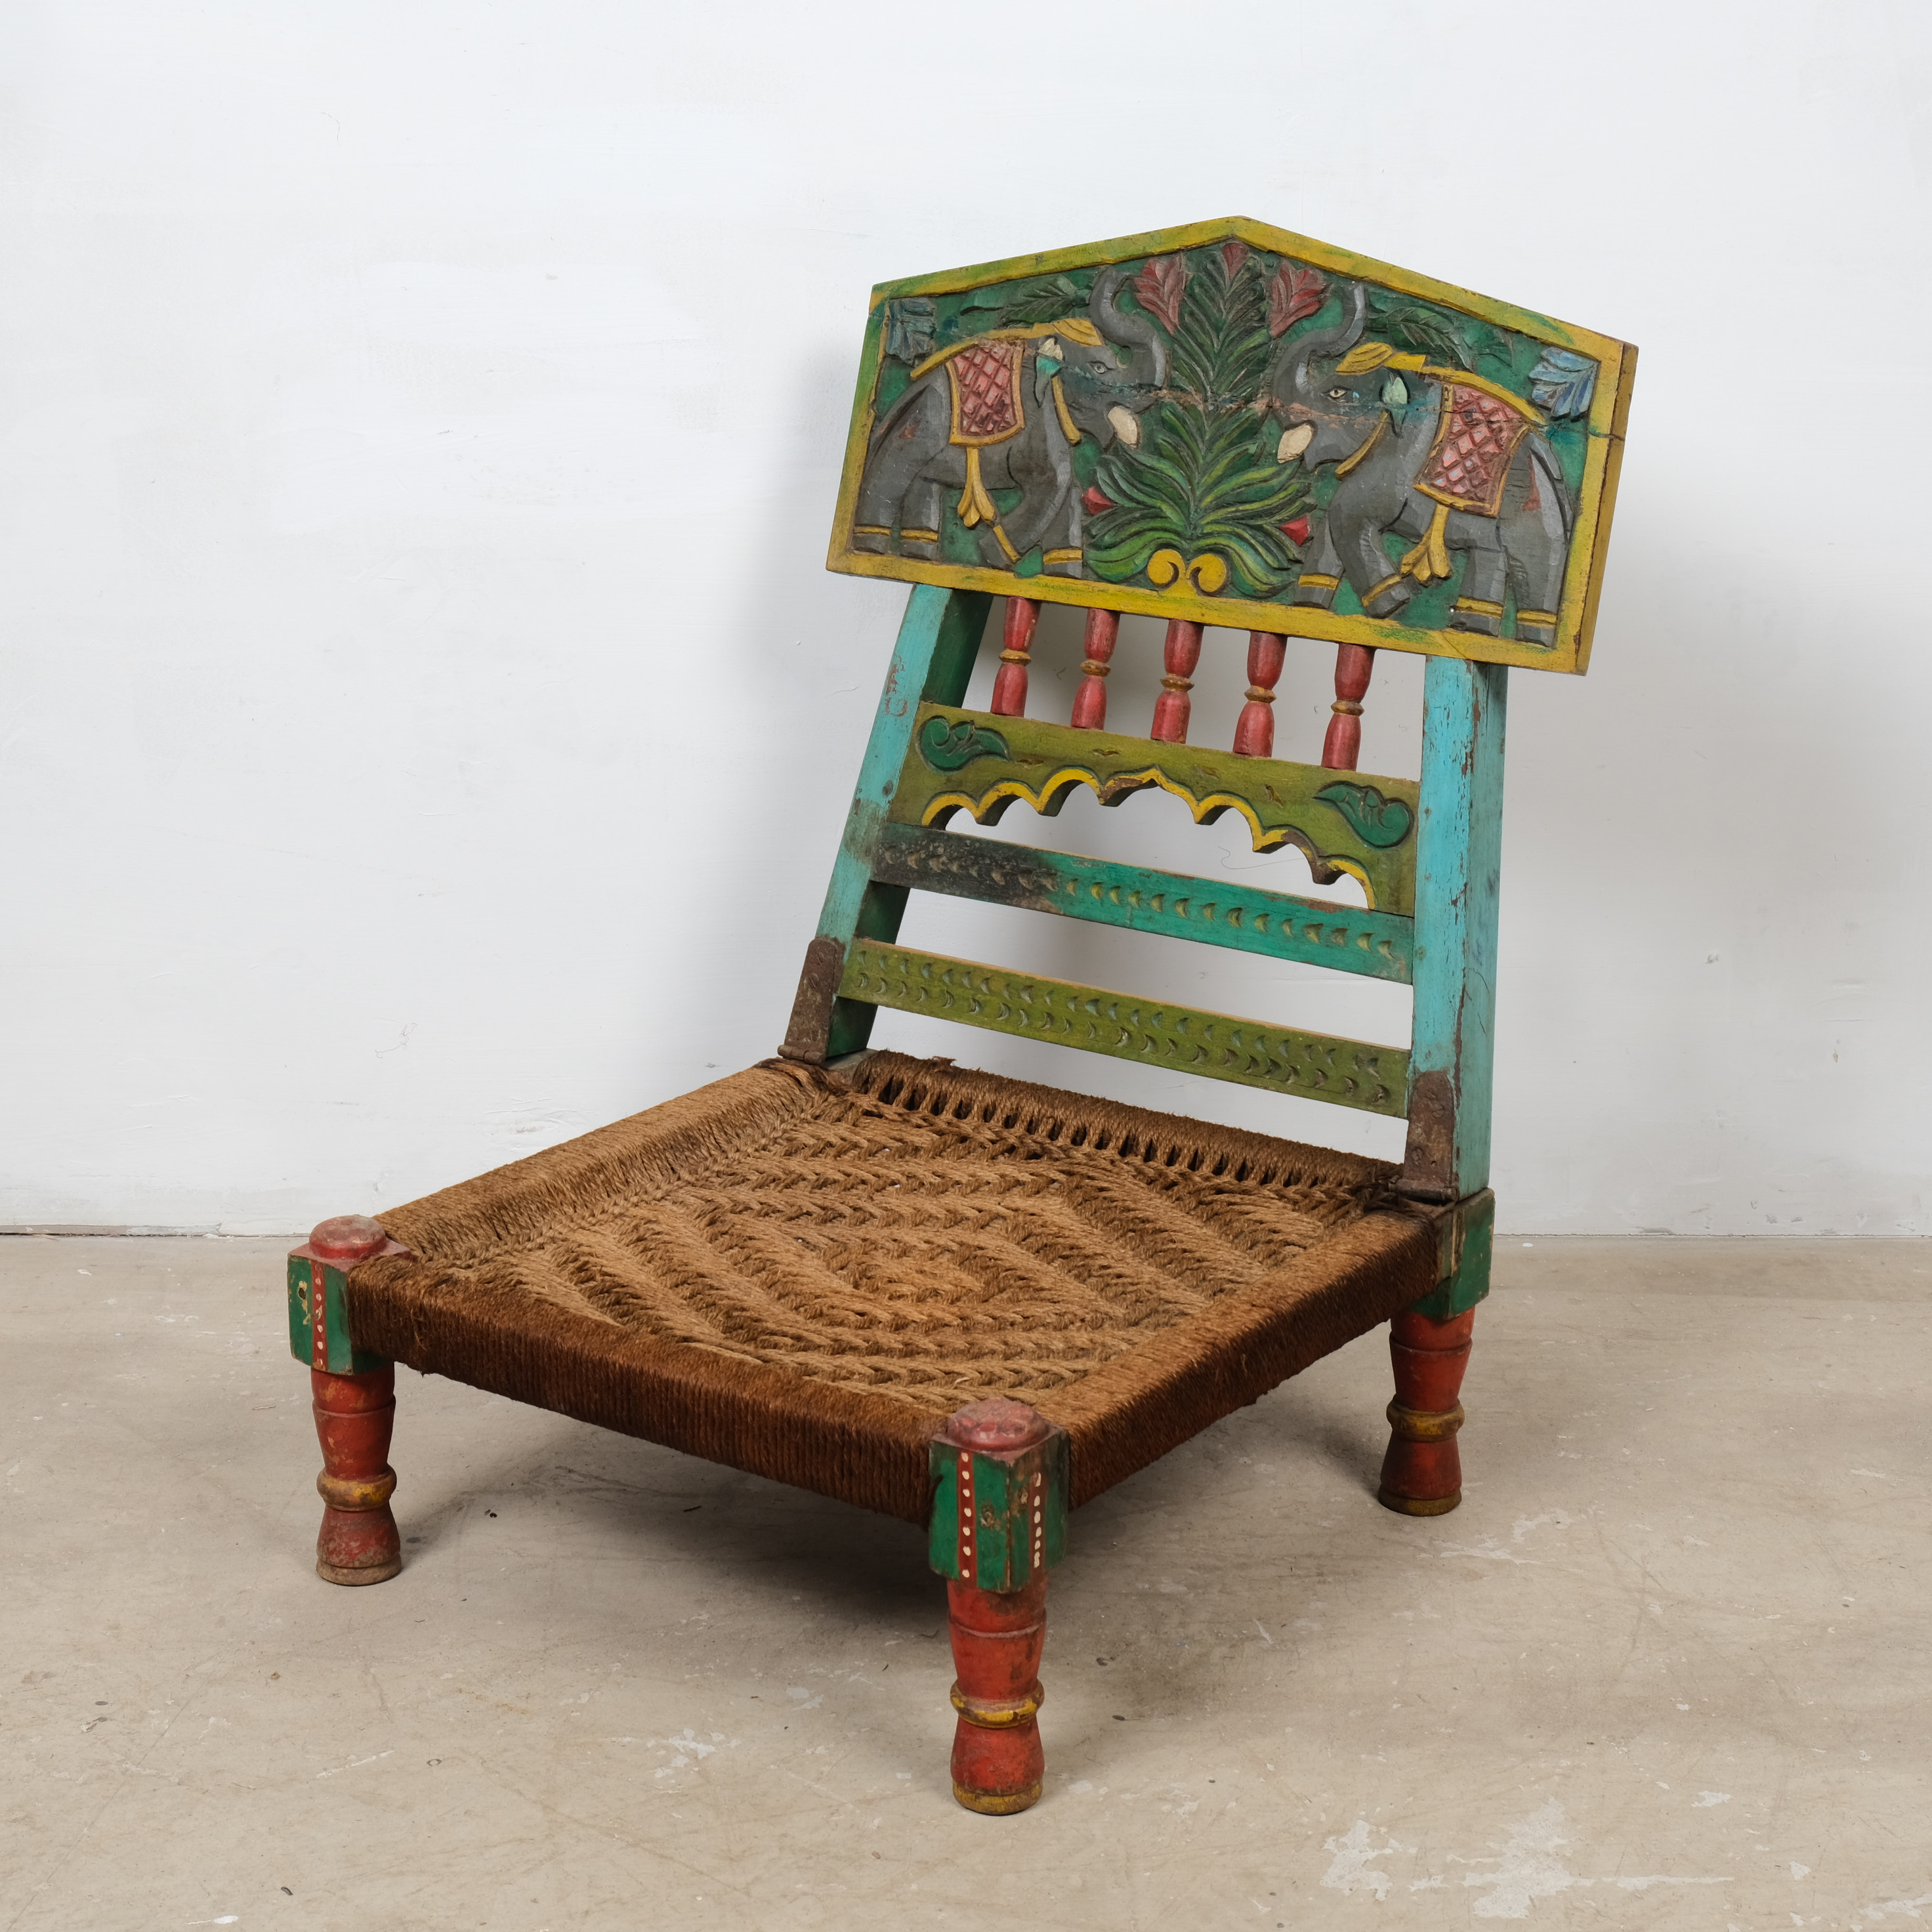 彩绘Pida椅 矮椅靠背印度进口波西米亚特色编织手工珍藏古董民族